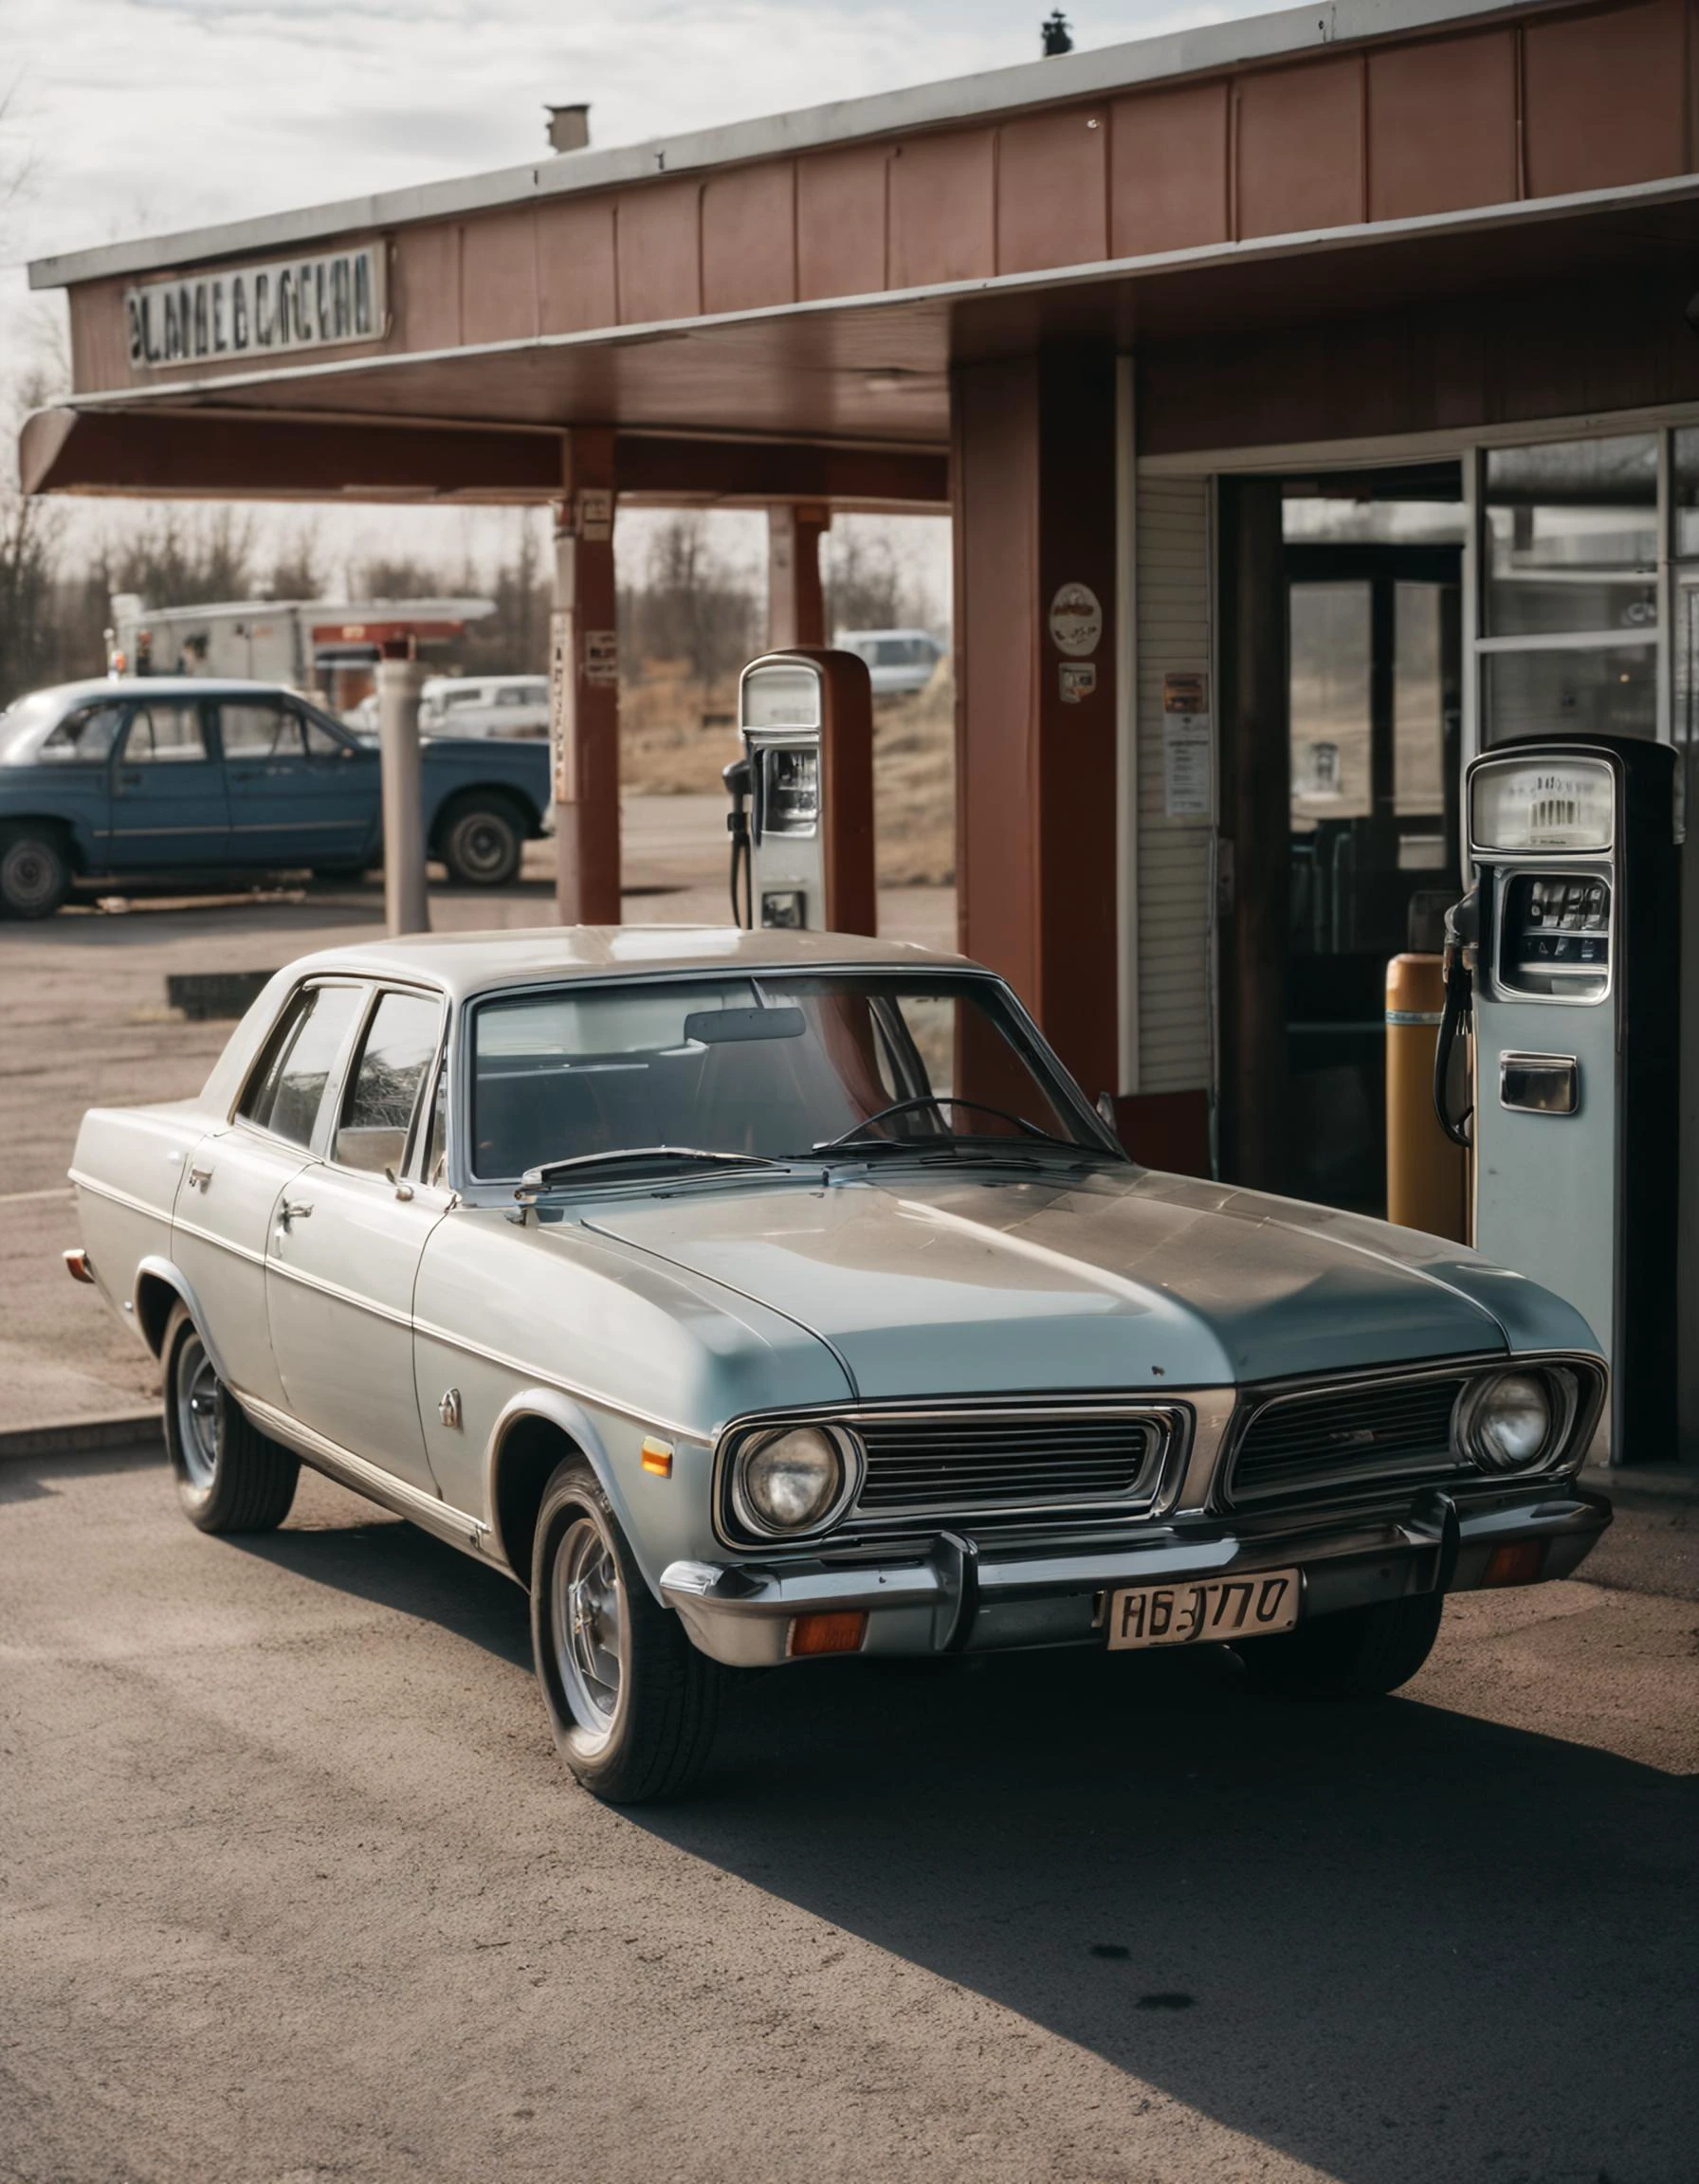 صورة أولية لأحد كبار السن في محطة وقود في السبعينيات, لقطة سينمائية, الإضاءة الطبيعية, ضبط تلقائي للصورة